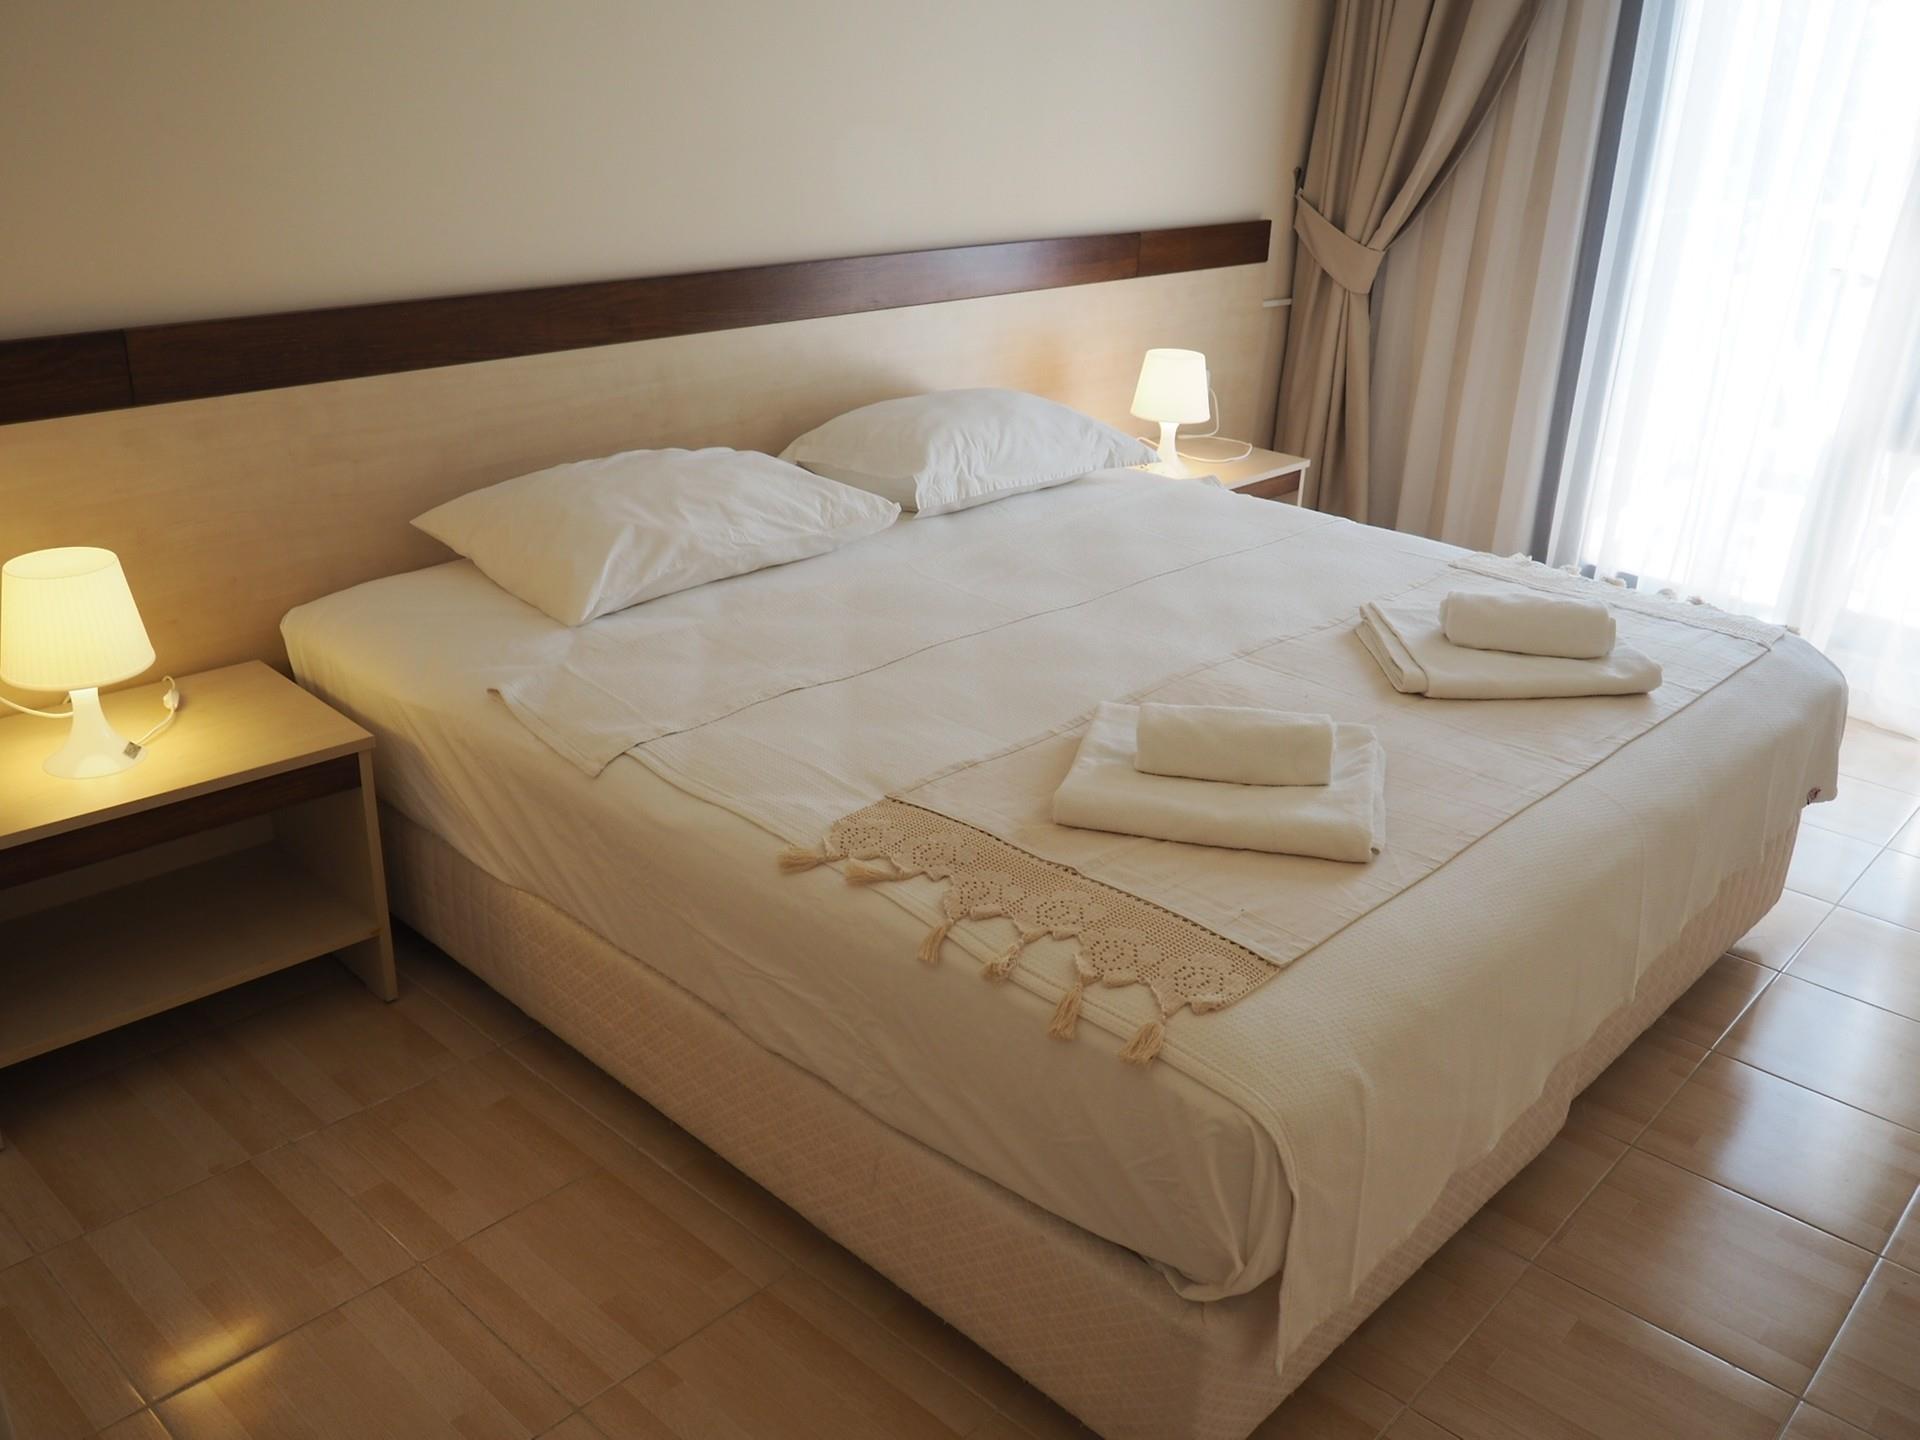 Кровать в гостиничном номере